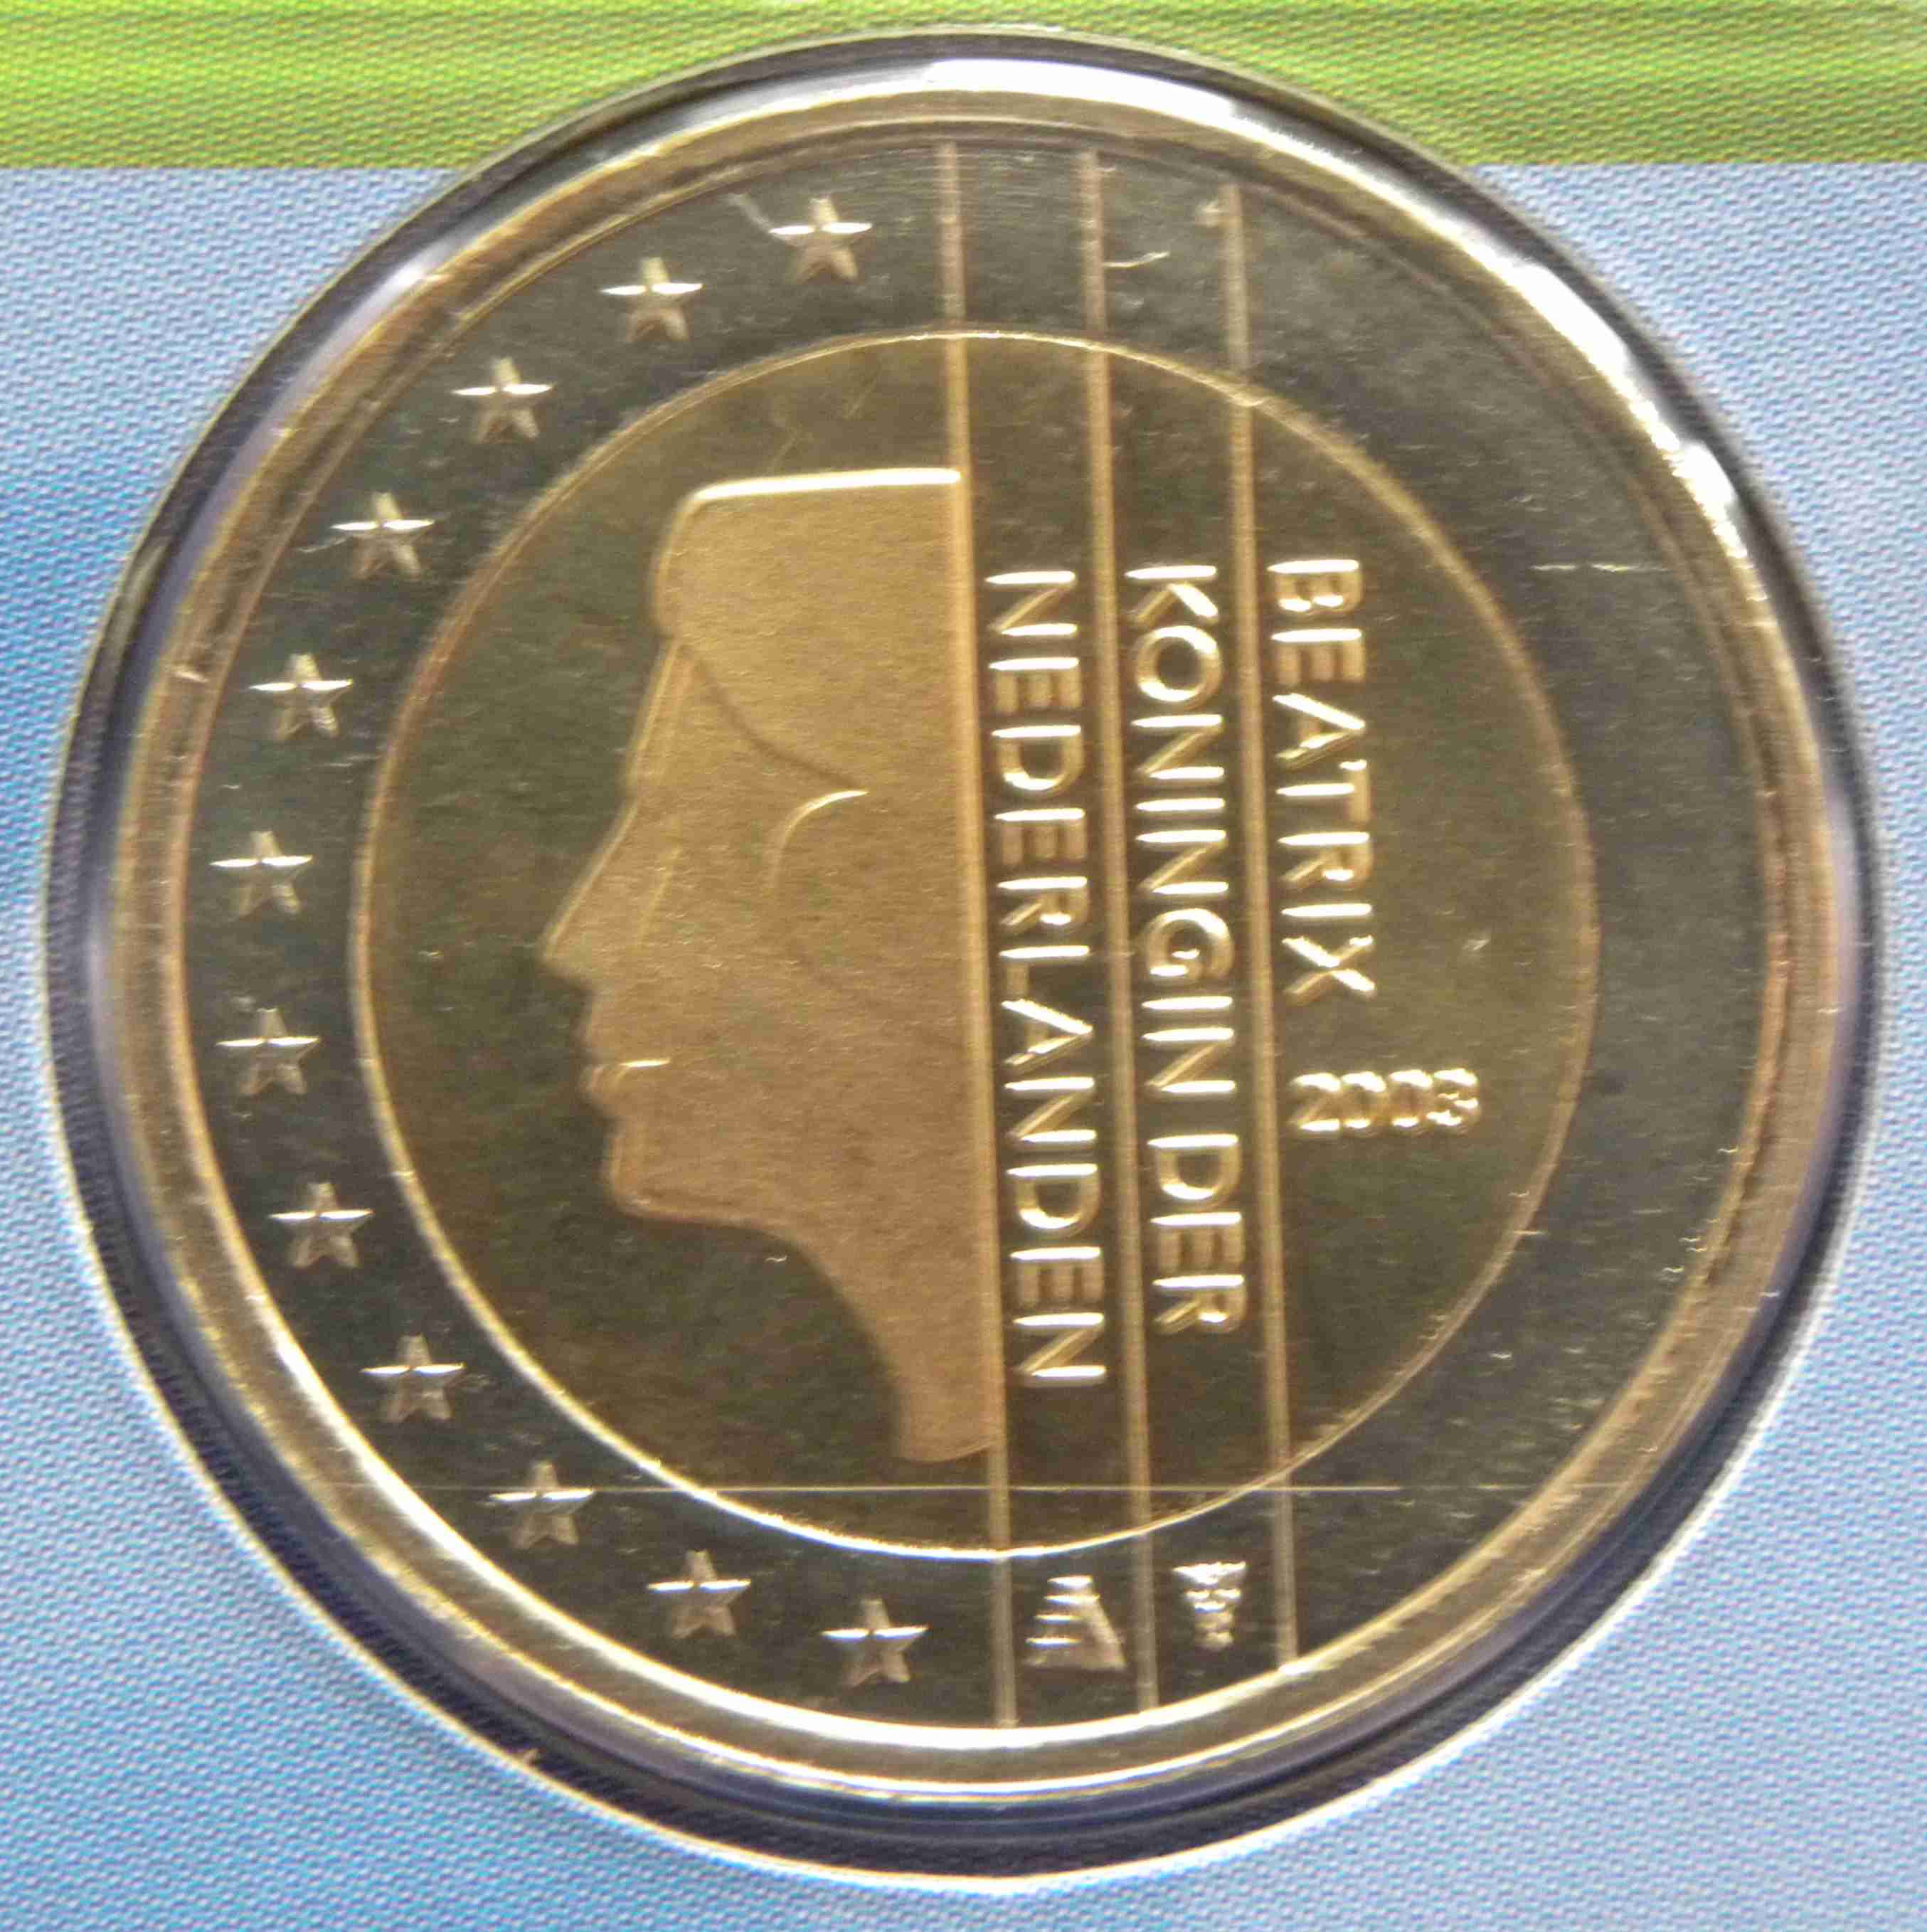 Niederlande Euro Kursmünzen 2003 ᐅ Wert, Infos und Bilder bei euro